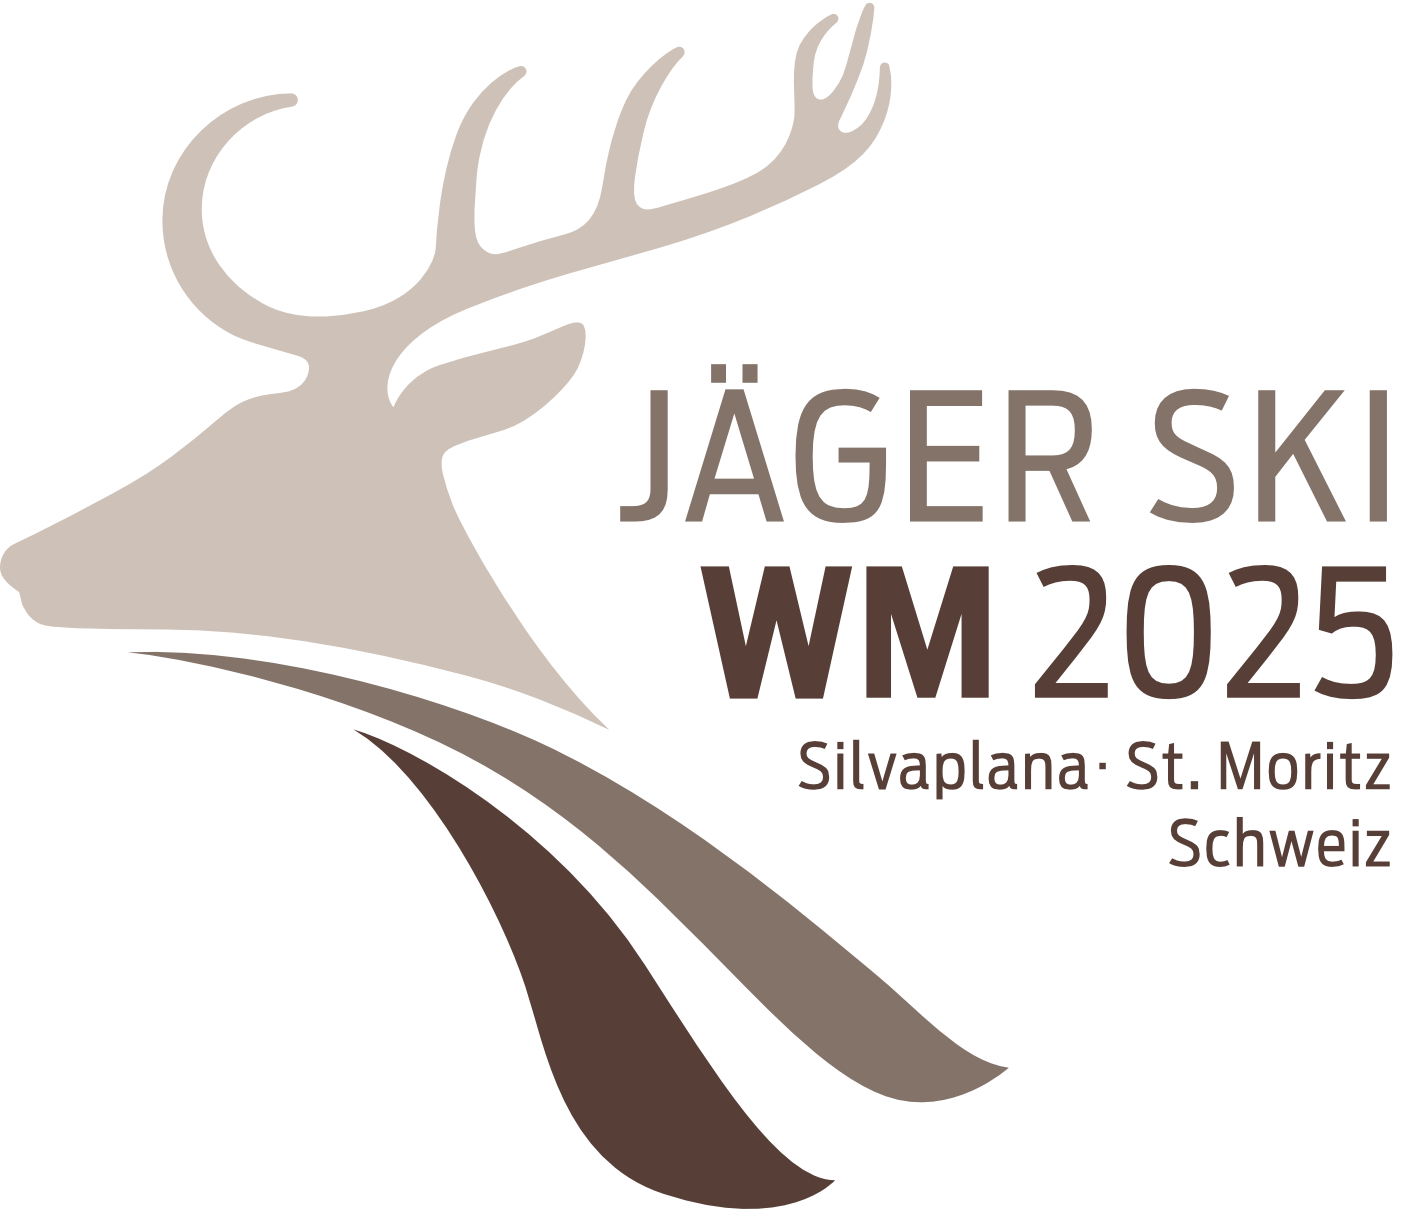 Jäger Ski WM